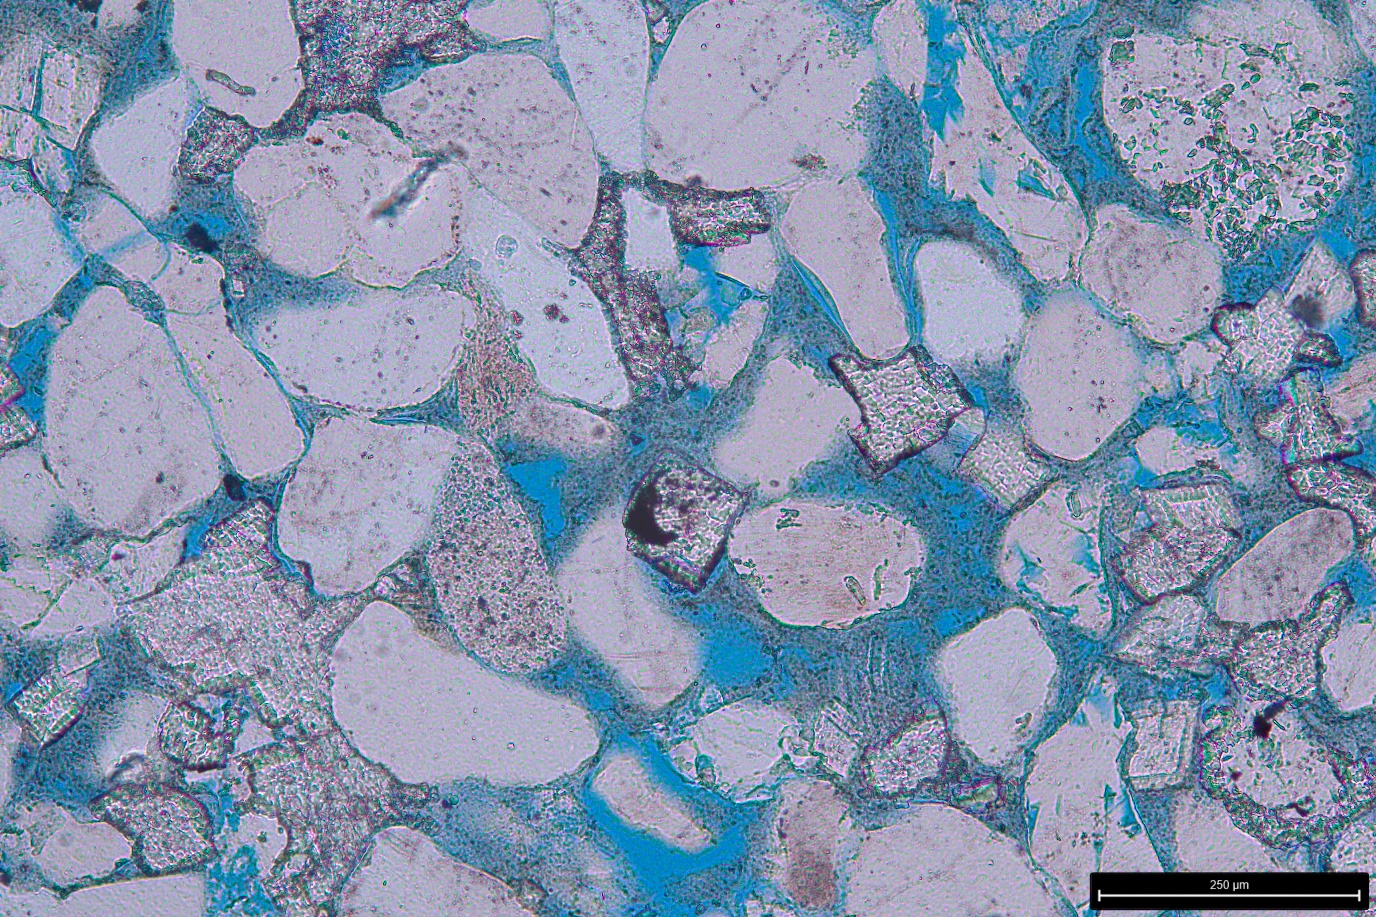 Microscopisch beeld van kleisteen. Blauw toont de holtes waarin waterstof wordt opgeslagen